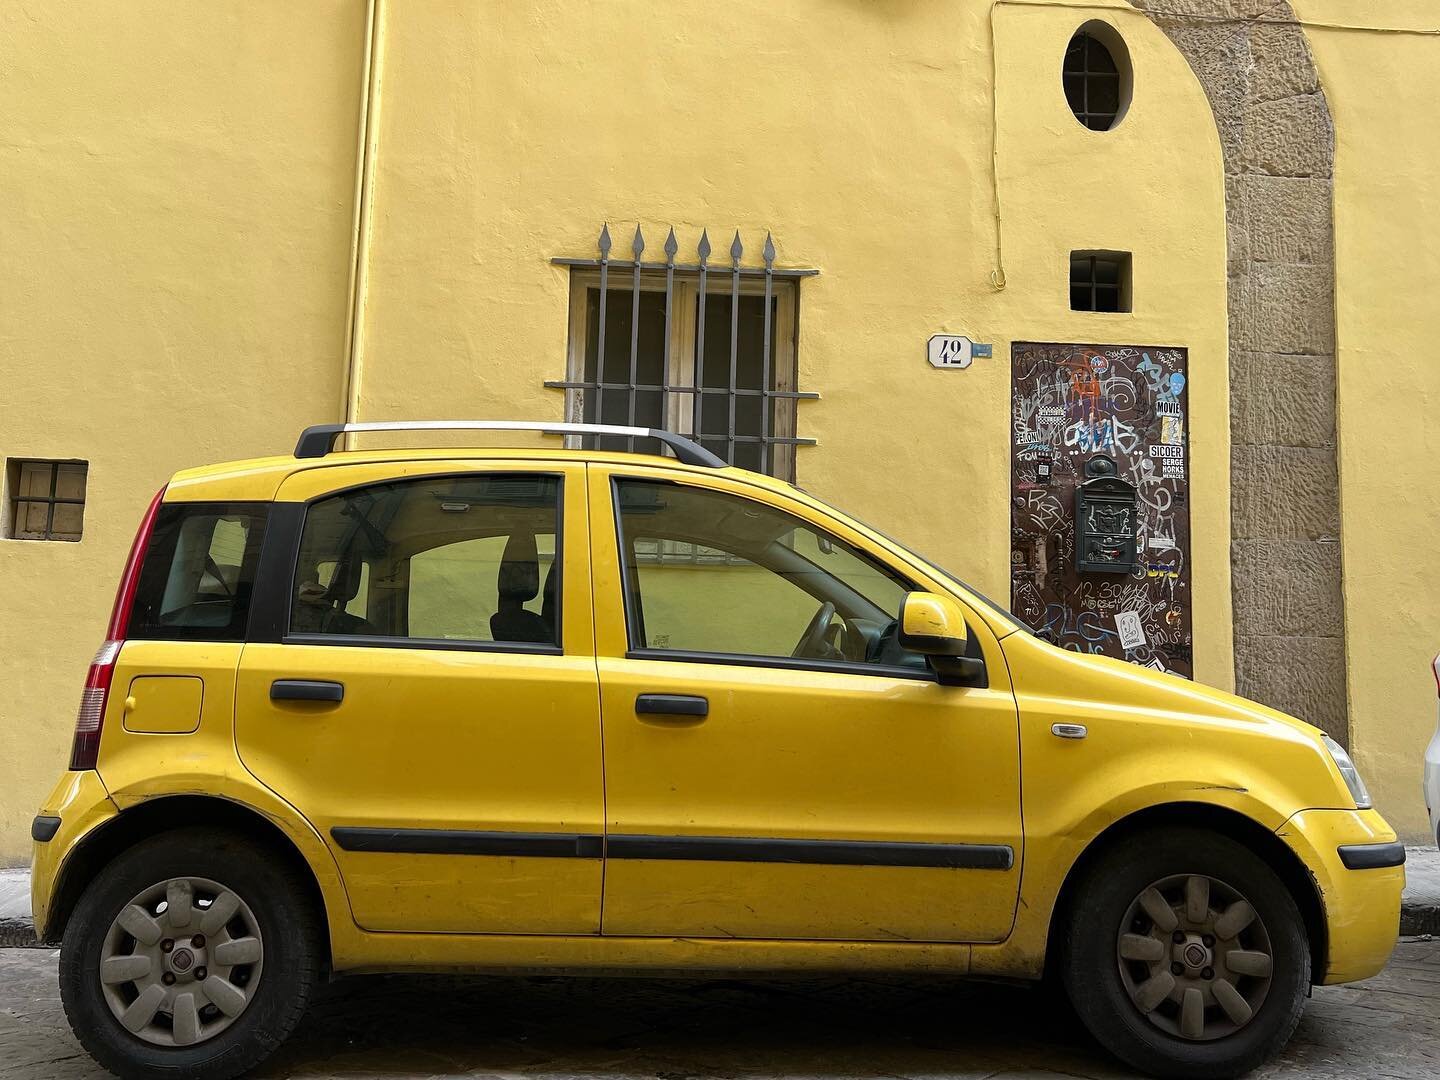 これぞデザインのチカラ

発売後20年近く経過しても街に馴染む。
それが近代だろうと中世の街だろうと。
ドロドロでもボロボロでも光ってる。

二代目フィアットパンダ、169型。

#italiancars #fiatpanda 
#italiandesign #productdesign #streetcar #italy #color #フィアット
#firenze